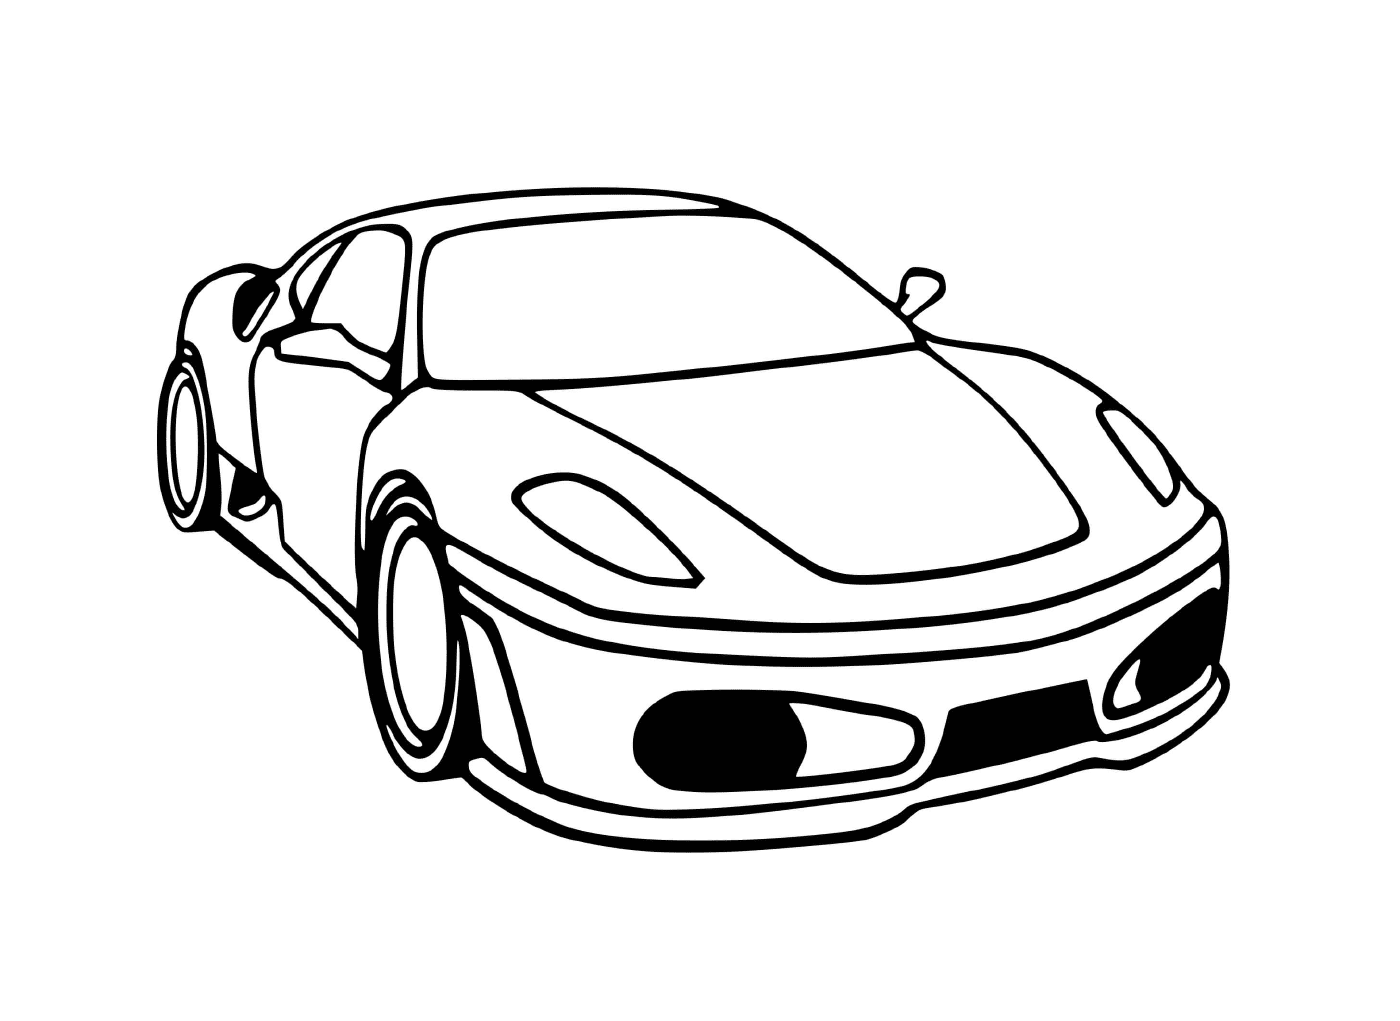  Ein Ferrari Auto f430 